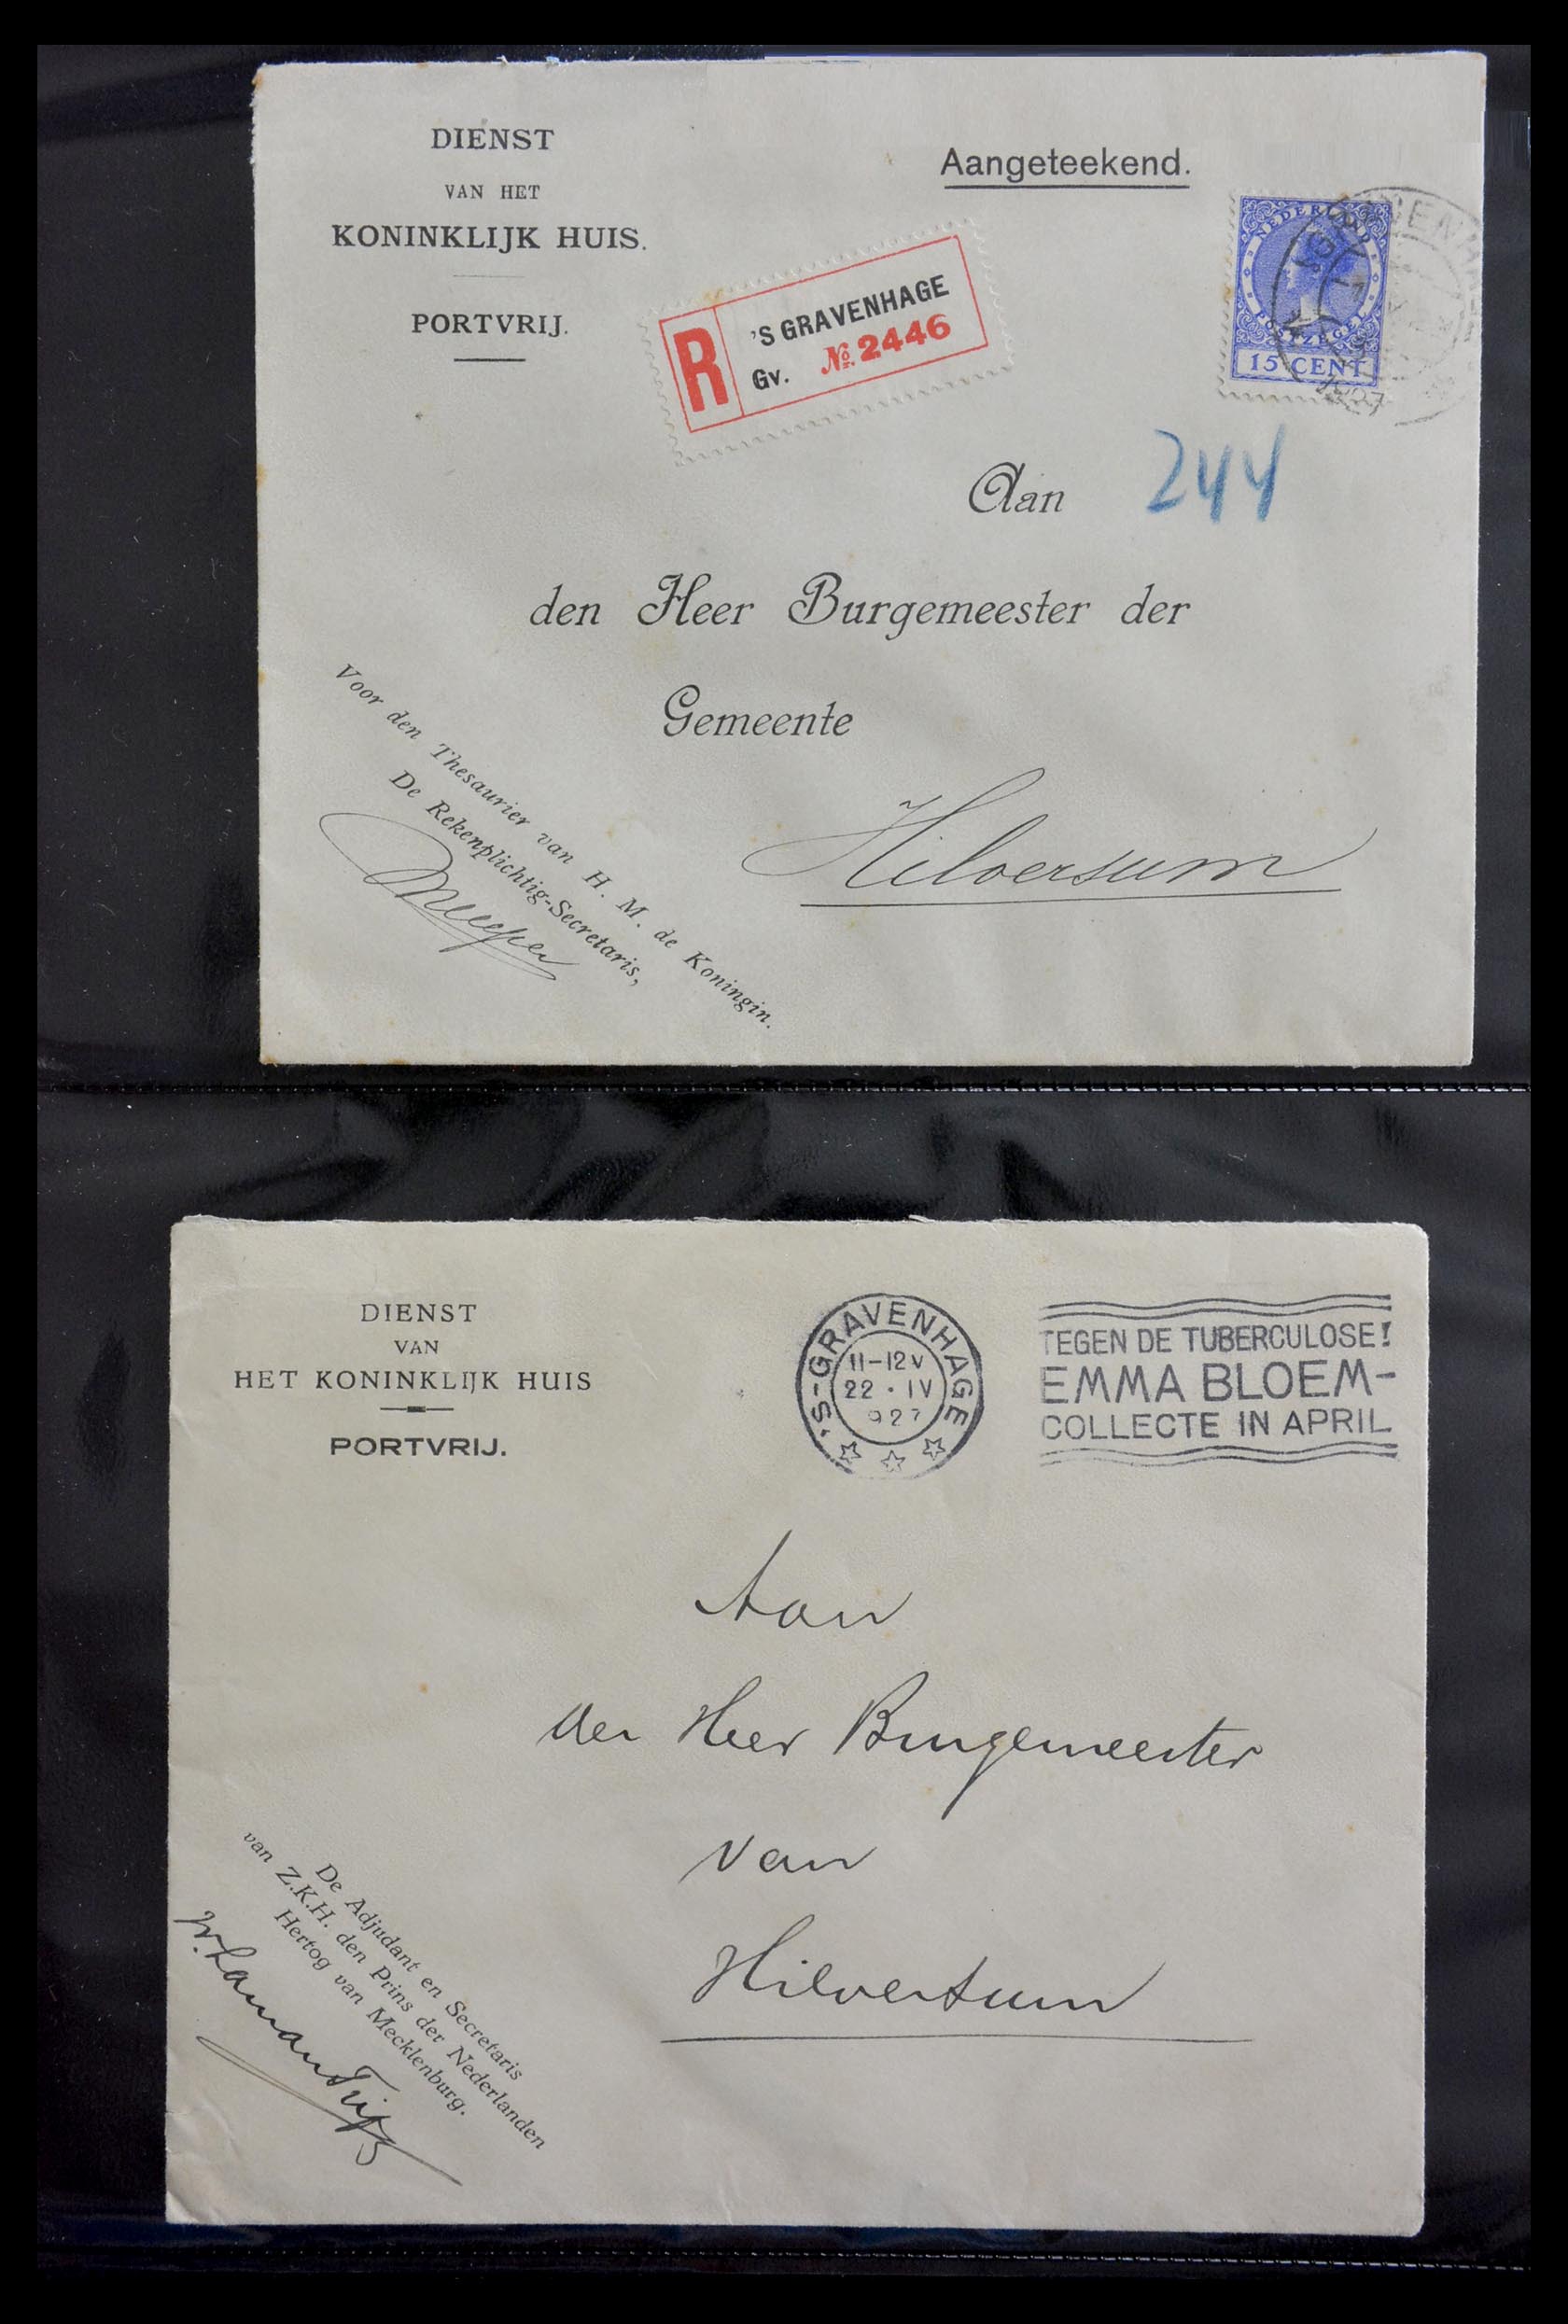 29241 001 - 29241 Nederland brieven koninklijk huis.